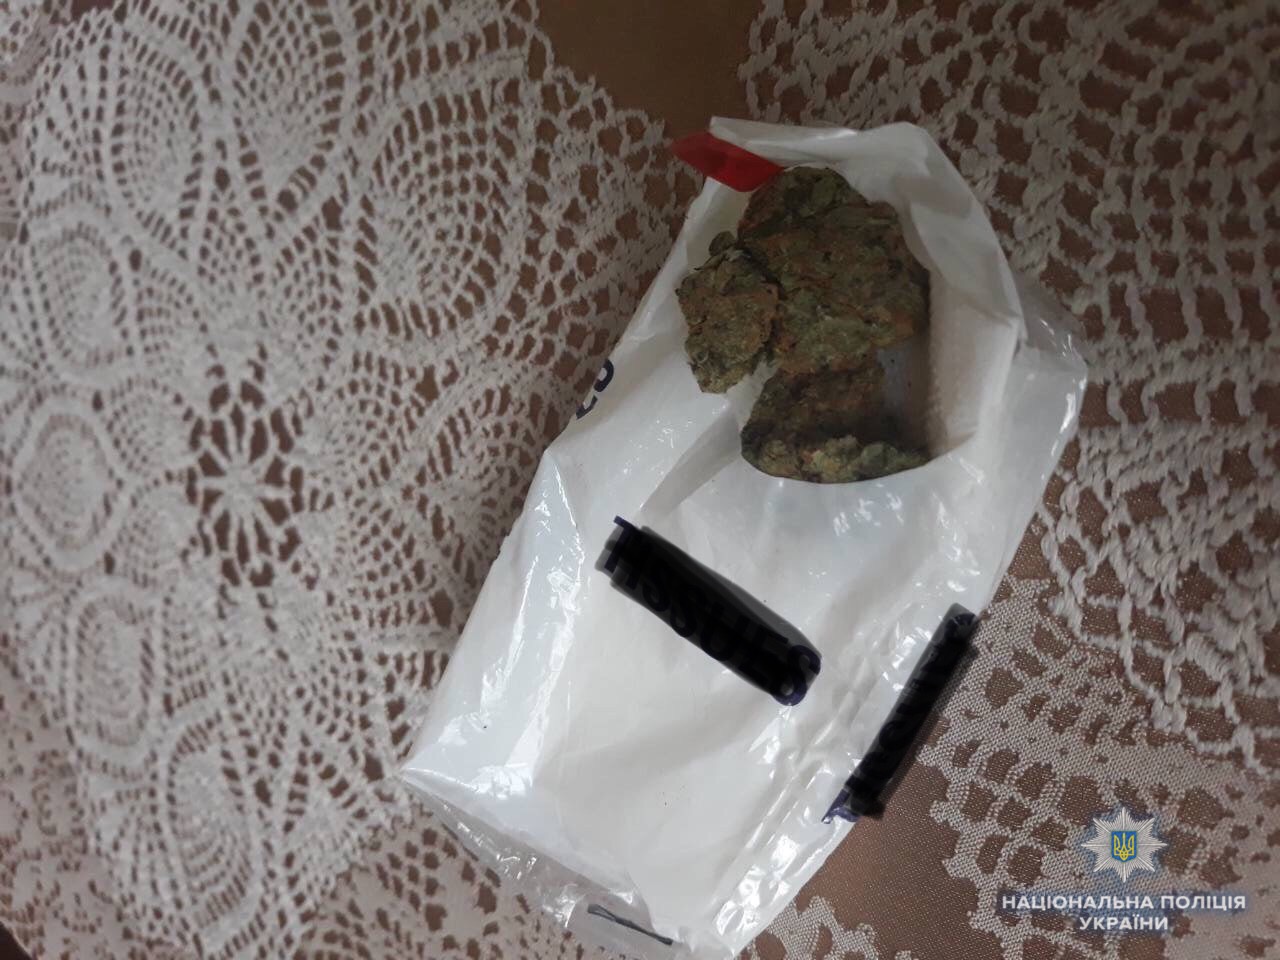 Відвідувач ресторану у Солотвині забув на столі згортки з марихуаною (ФОТО)